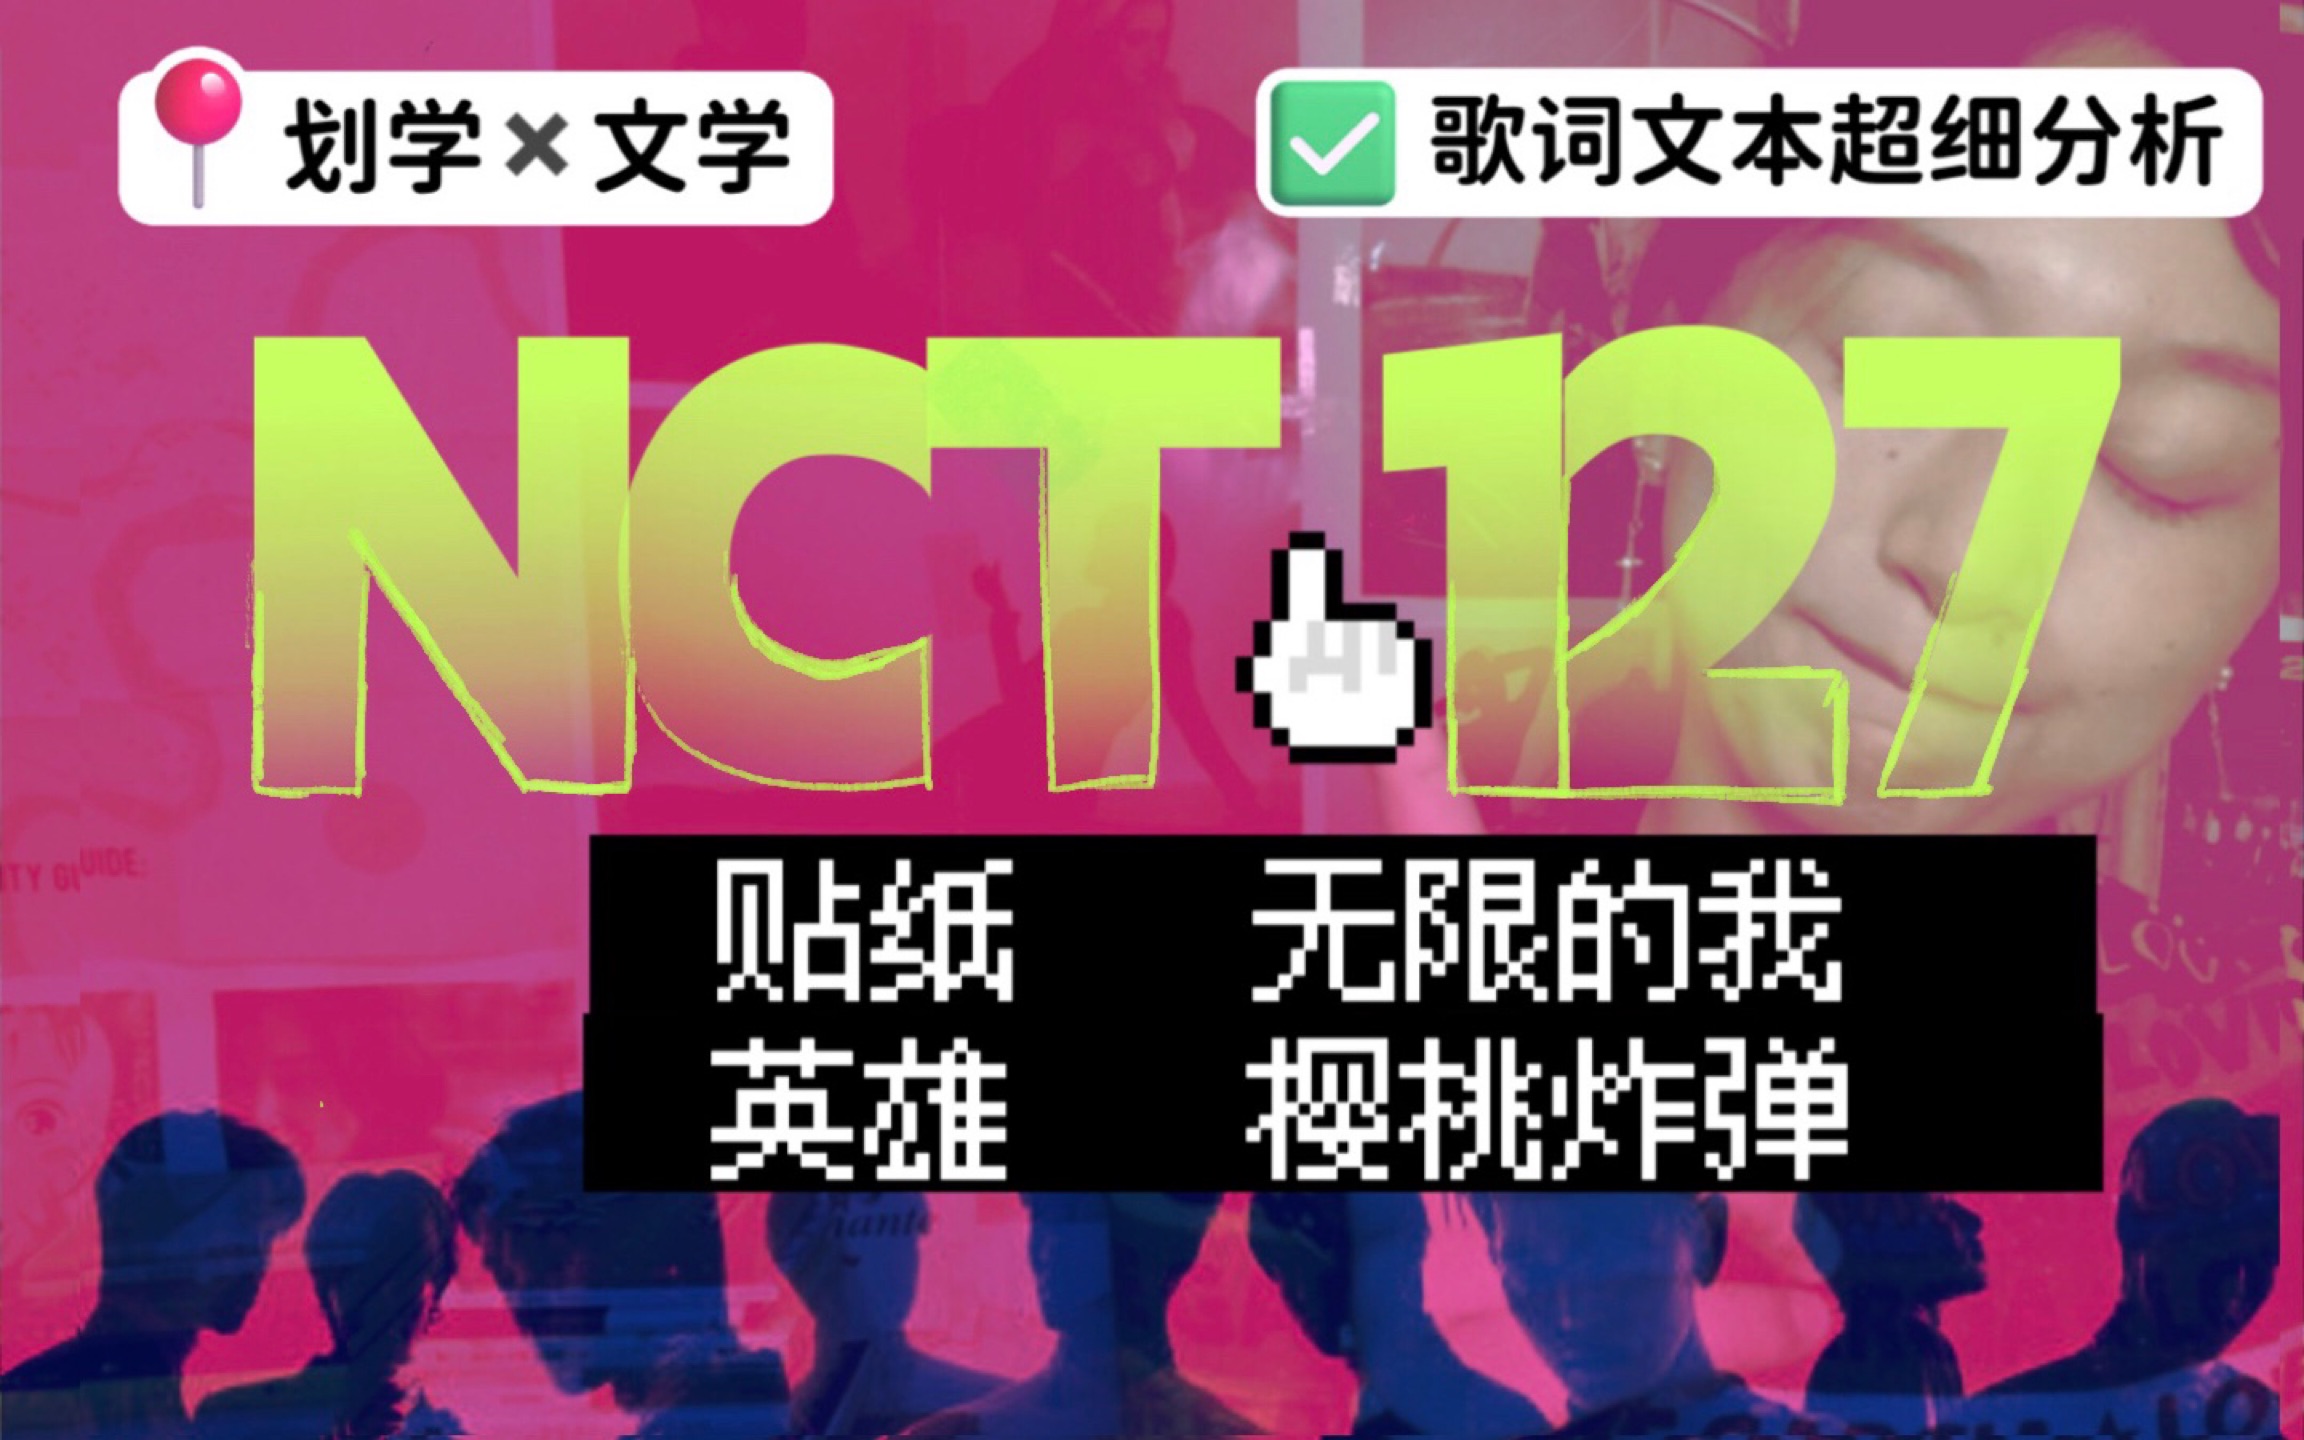 听懂Sticker之后，我疯狂地爱上了它｜这份“难听” 能打动人｜KPOP文学论坛：尝试用文本分析的方法，走进韩国最怪偶像组合——NCT127的音乐世界